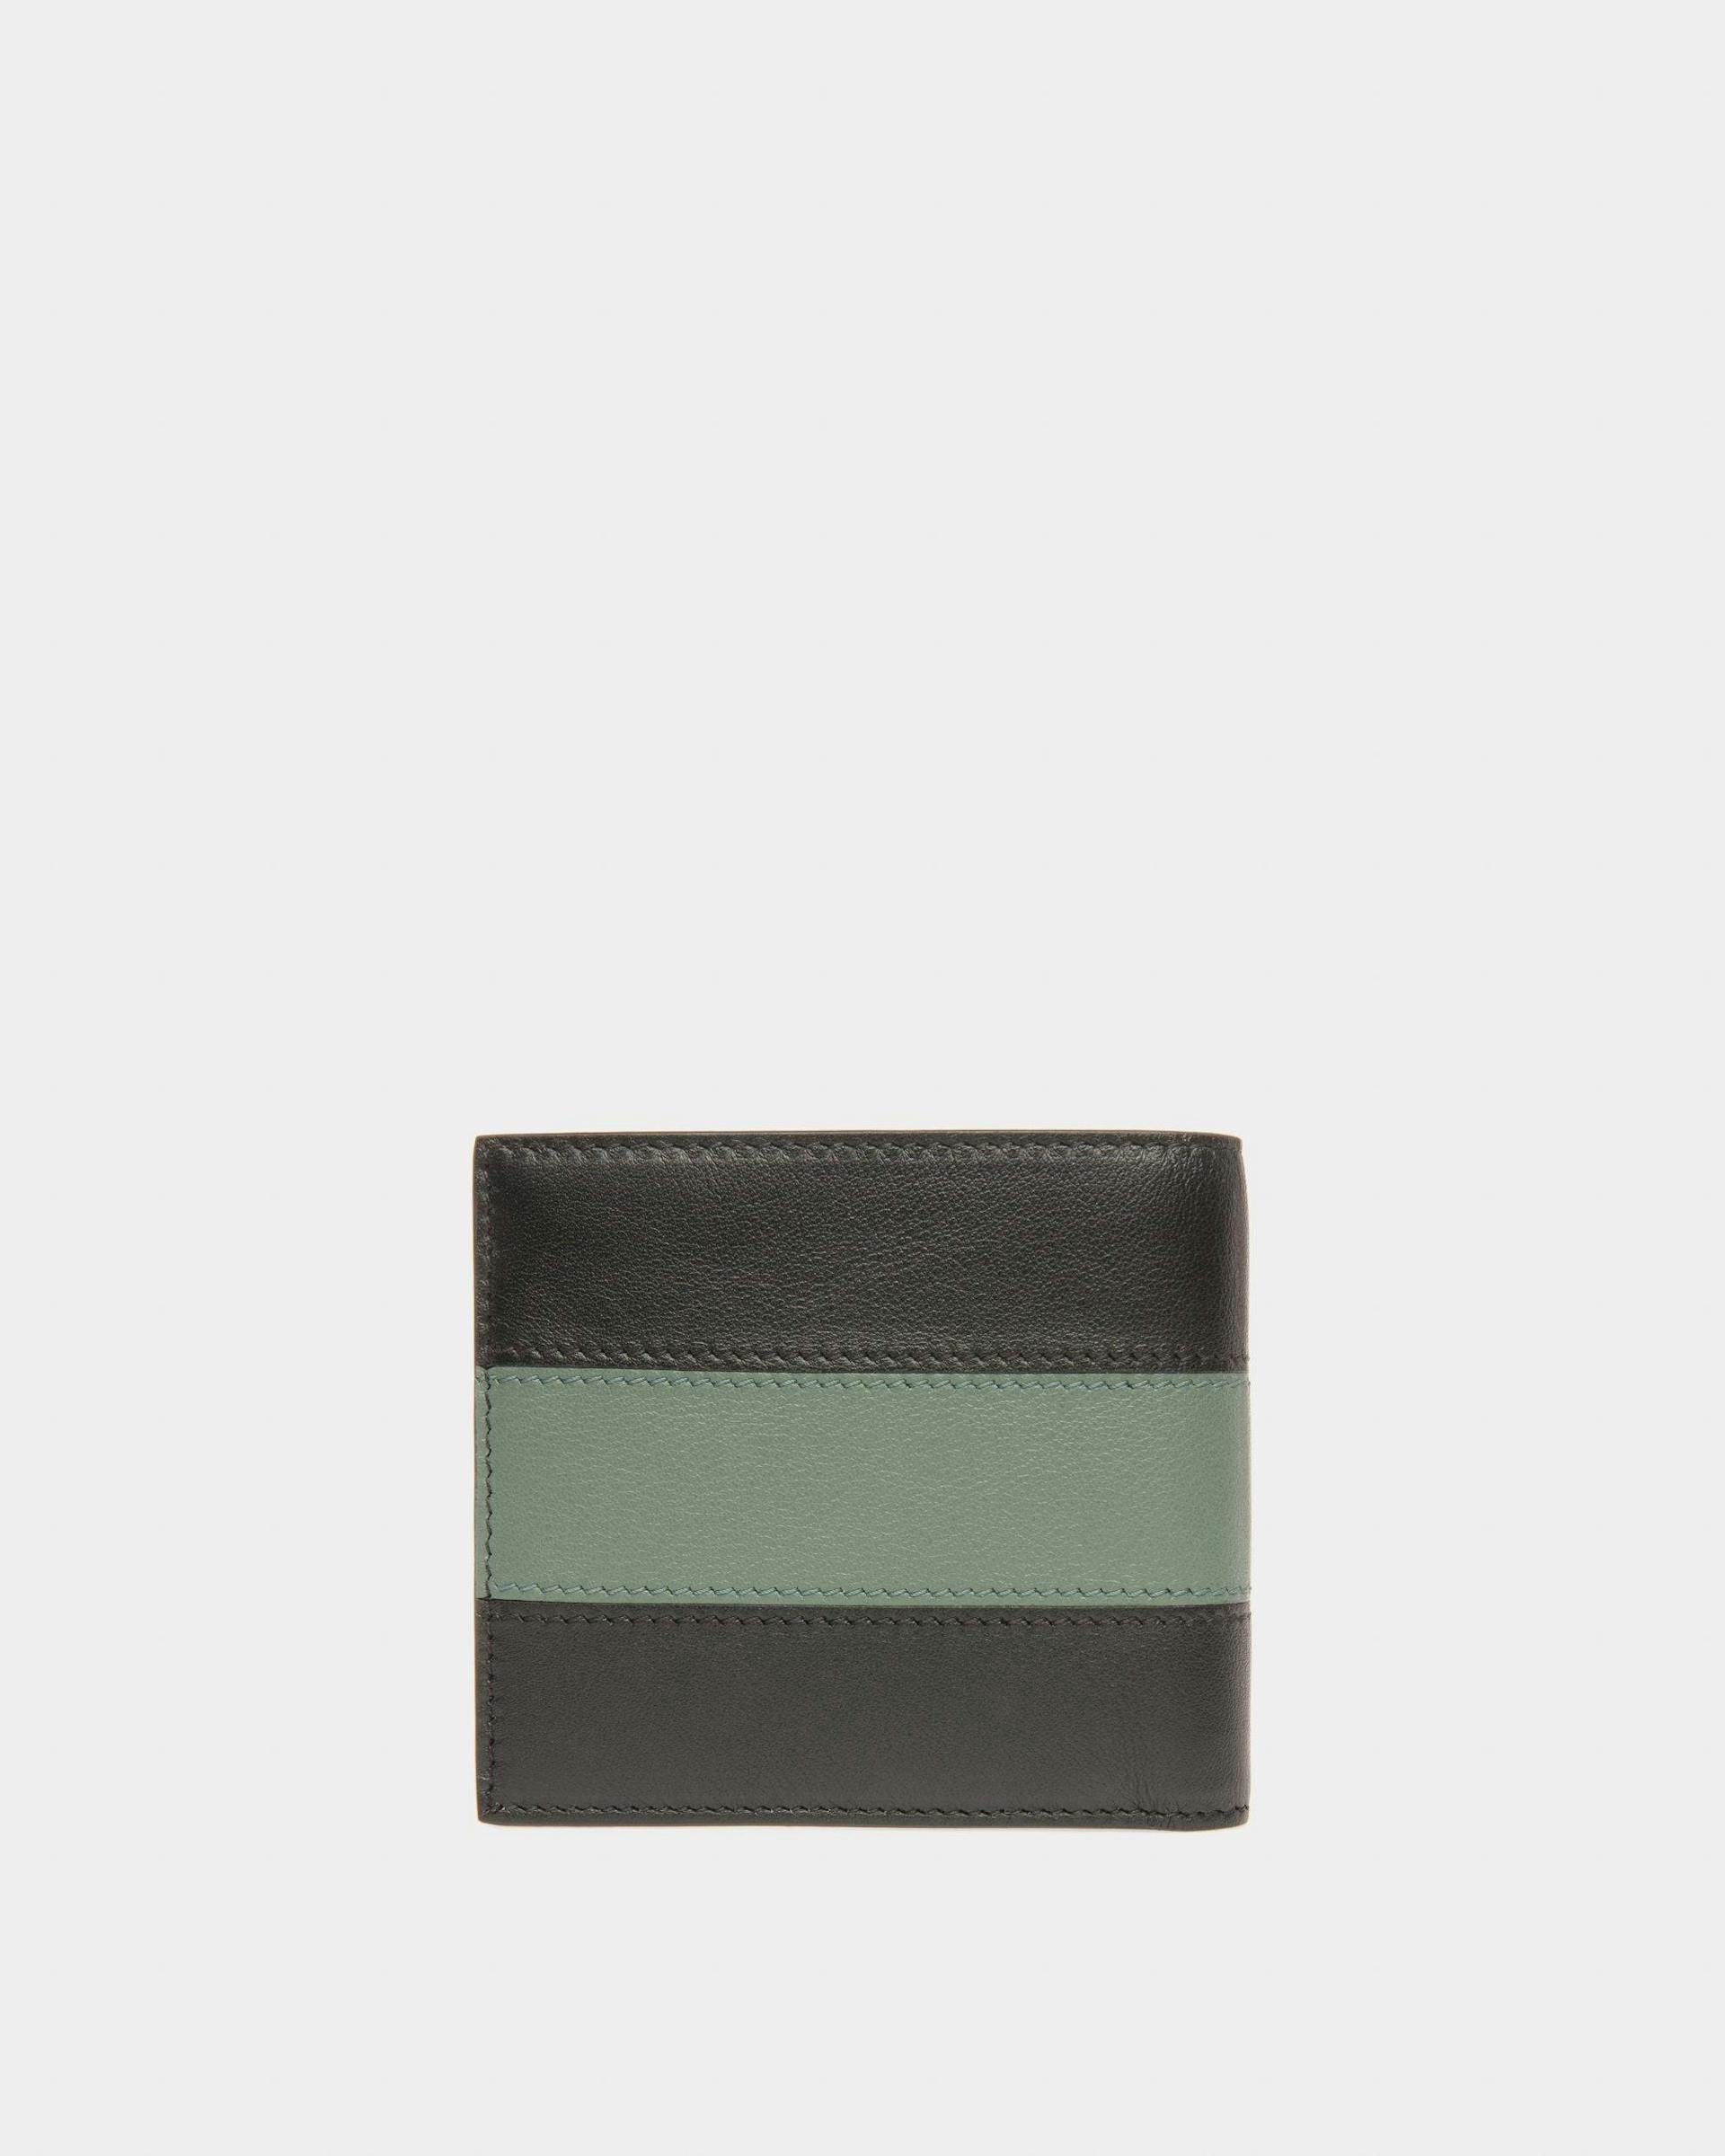 Brasai Leather Wallet In Black & Green - Men's - Bally - 02